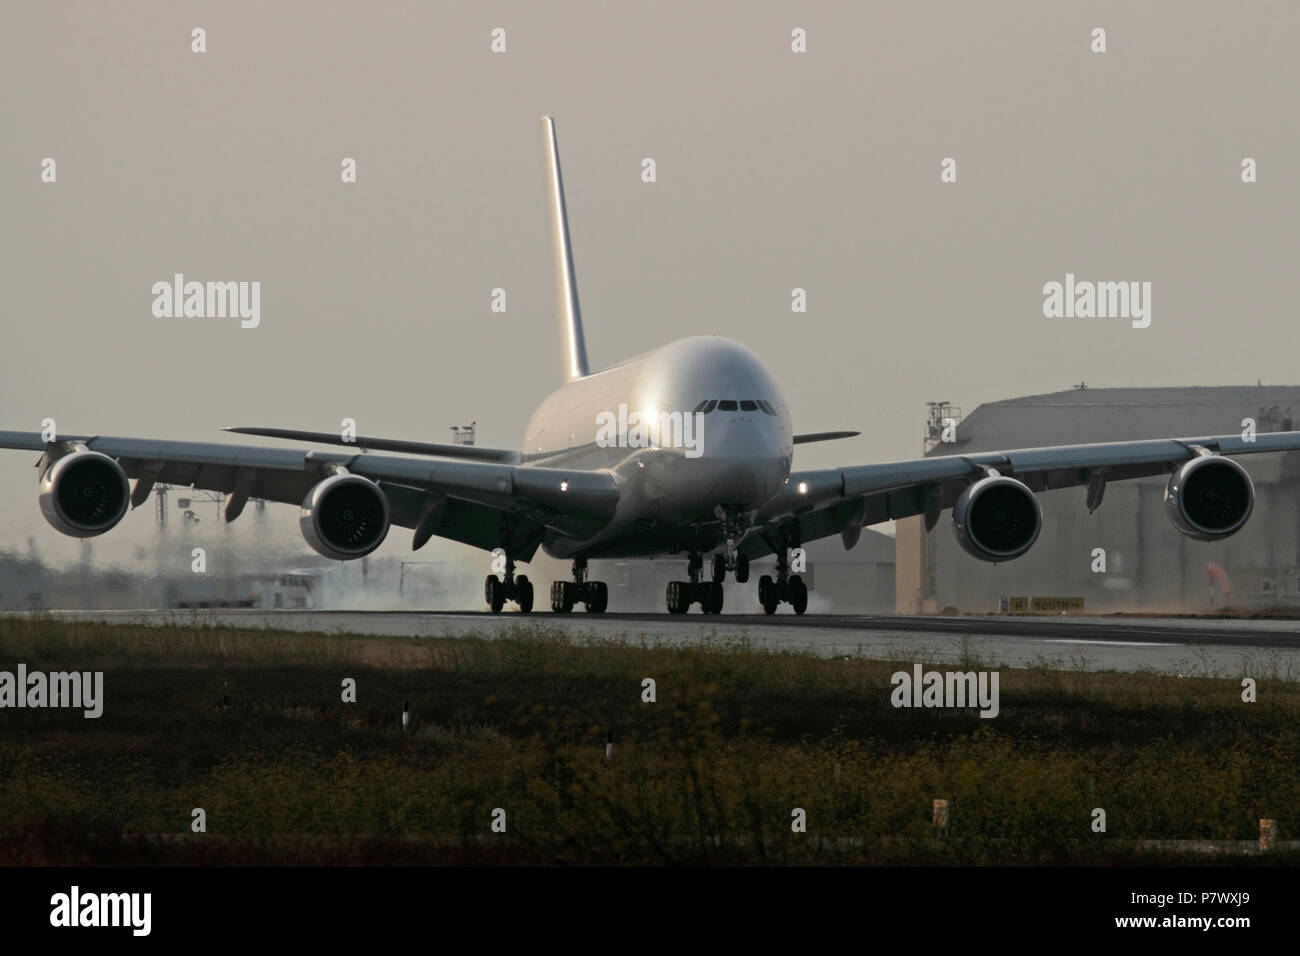 Airbus A380 4-Motor Langstrecken Passagier jet Flugzeug Landung auf Piste mit reifen Rauch bei Touchdown. Keine Lackierung oder proprietäre Details sichtbar Stockfoto